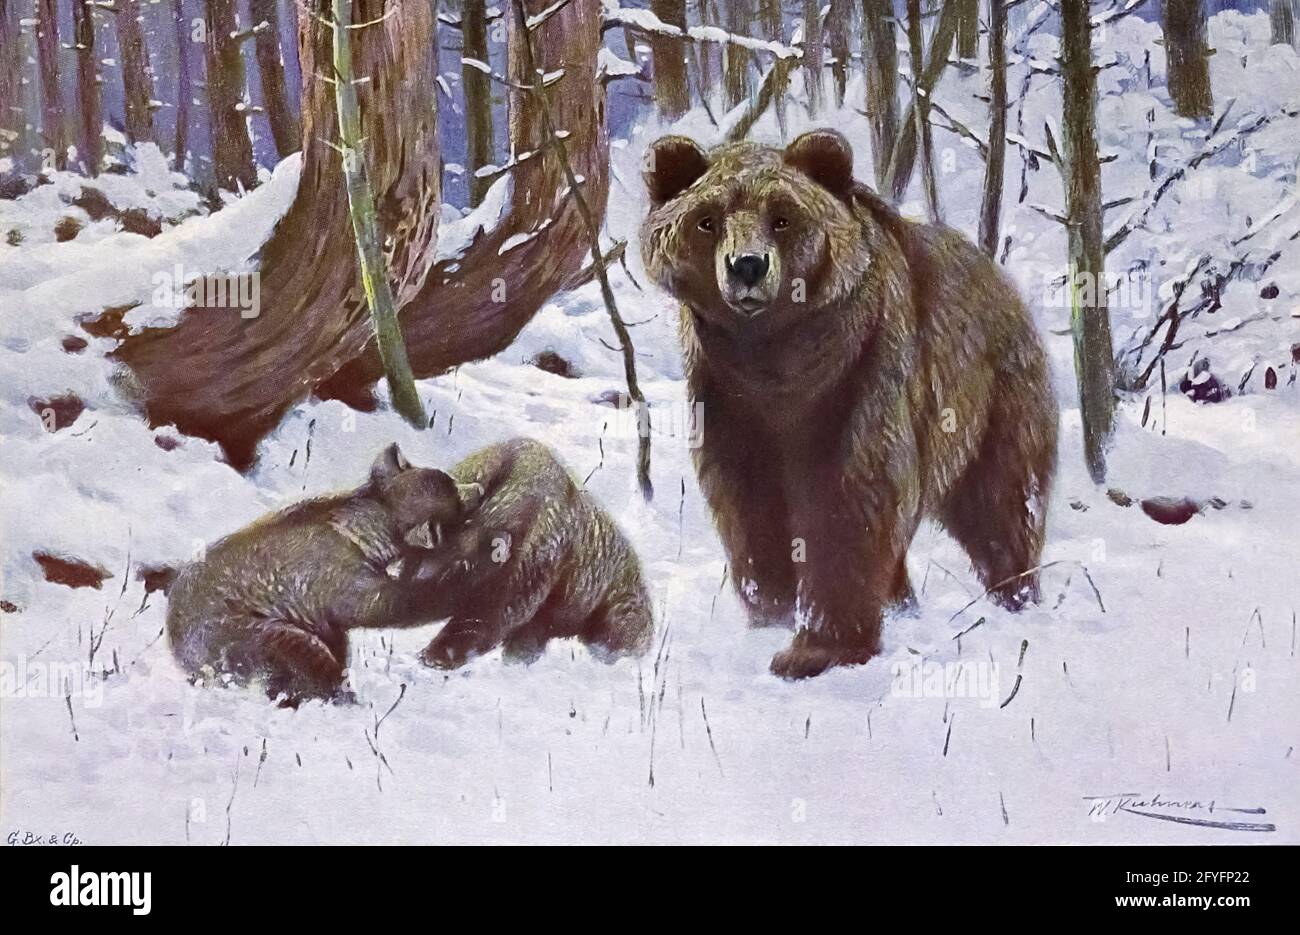 El oso pardo (Ursus arctos aquí como Ursus arctus) es una especie de oso grande que se encuentra a través de Eurasia y Norteamérica. En América del Norte, las poblaciones de osos pardos se llaman osos grizzly, mientras que la subespecie que habita en las islas Kodiak de Alaska se conoce como el oso Kodiak. Es uno de los miembros terrestres vivos más grandes de la orden Carnivora, rivalizado en tamaño solamente por su pariente más cercano, el oso polar (Ursus maritimus), que es mucho menos variable en tamaño y ligeramente mayor en promedio.[3][4][5][6][7] La gama del oso marrón incluye partes de Rusia, Asia Central, China, Canadá, Canadá, Foto de stock